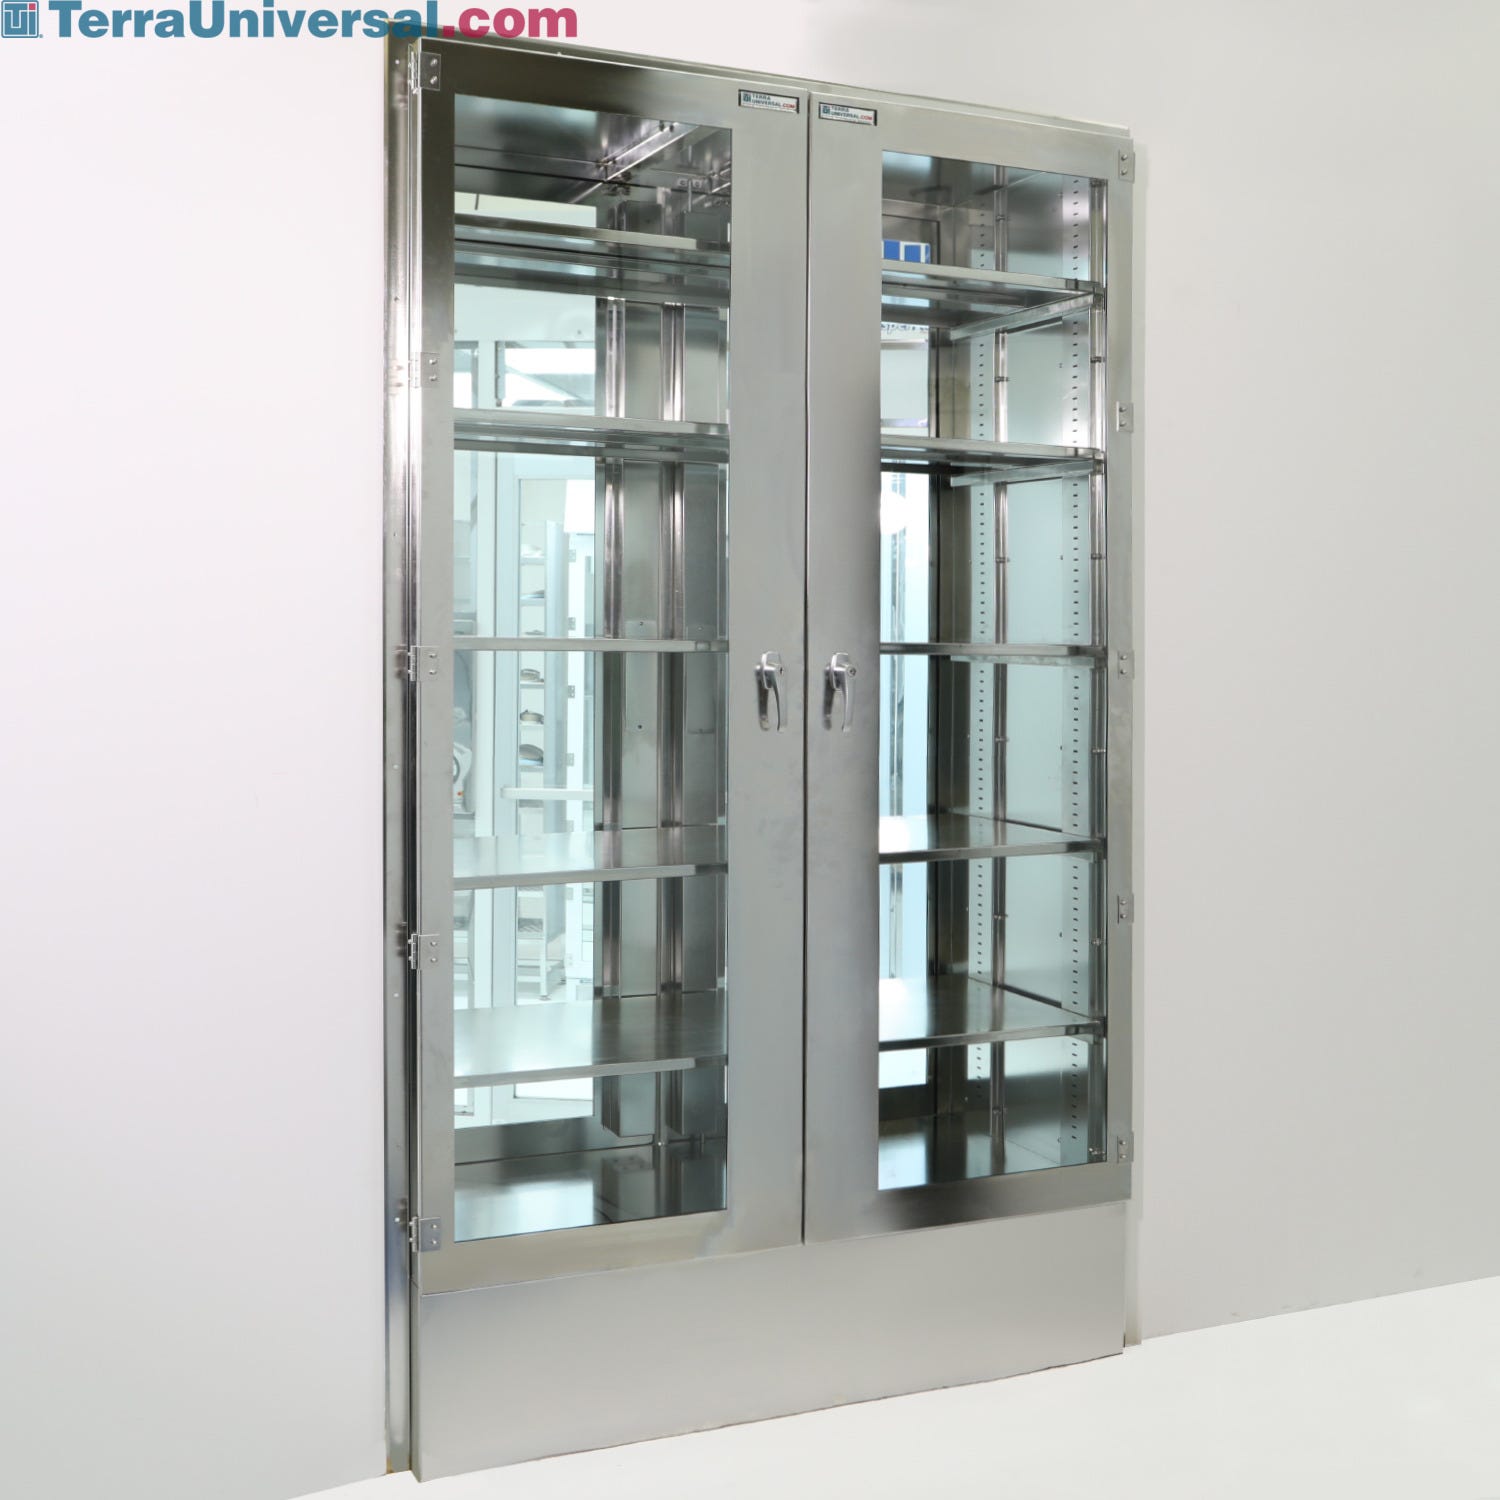 Table Height Double Door Storage Cabinet, X Door Storage Cabinet